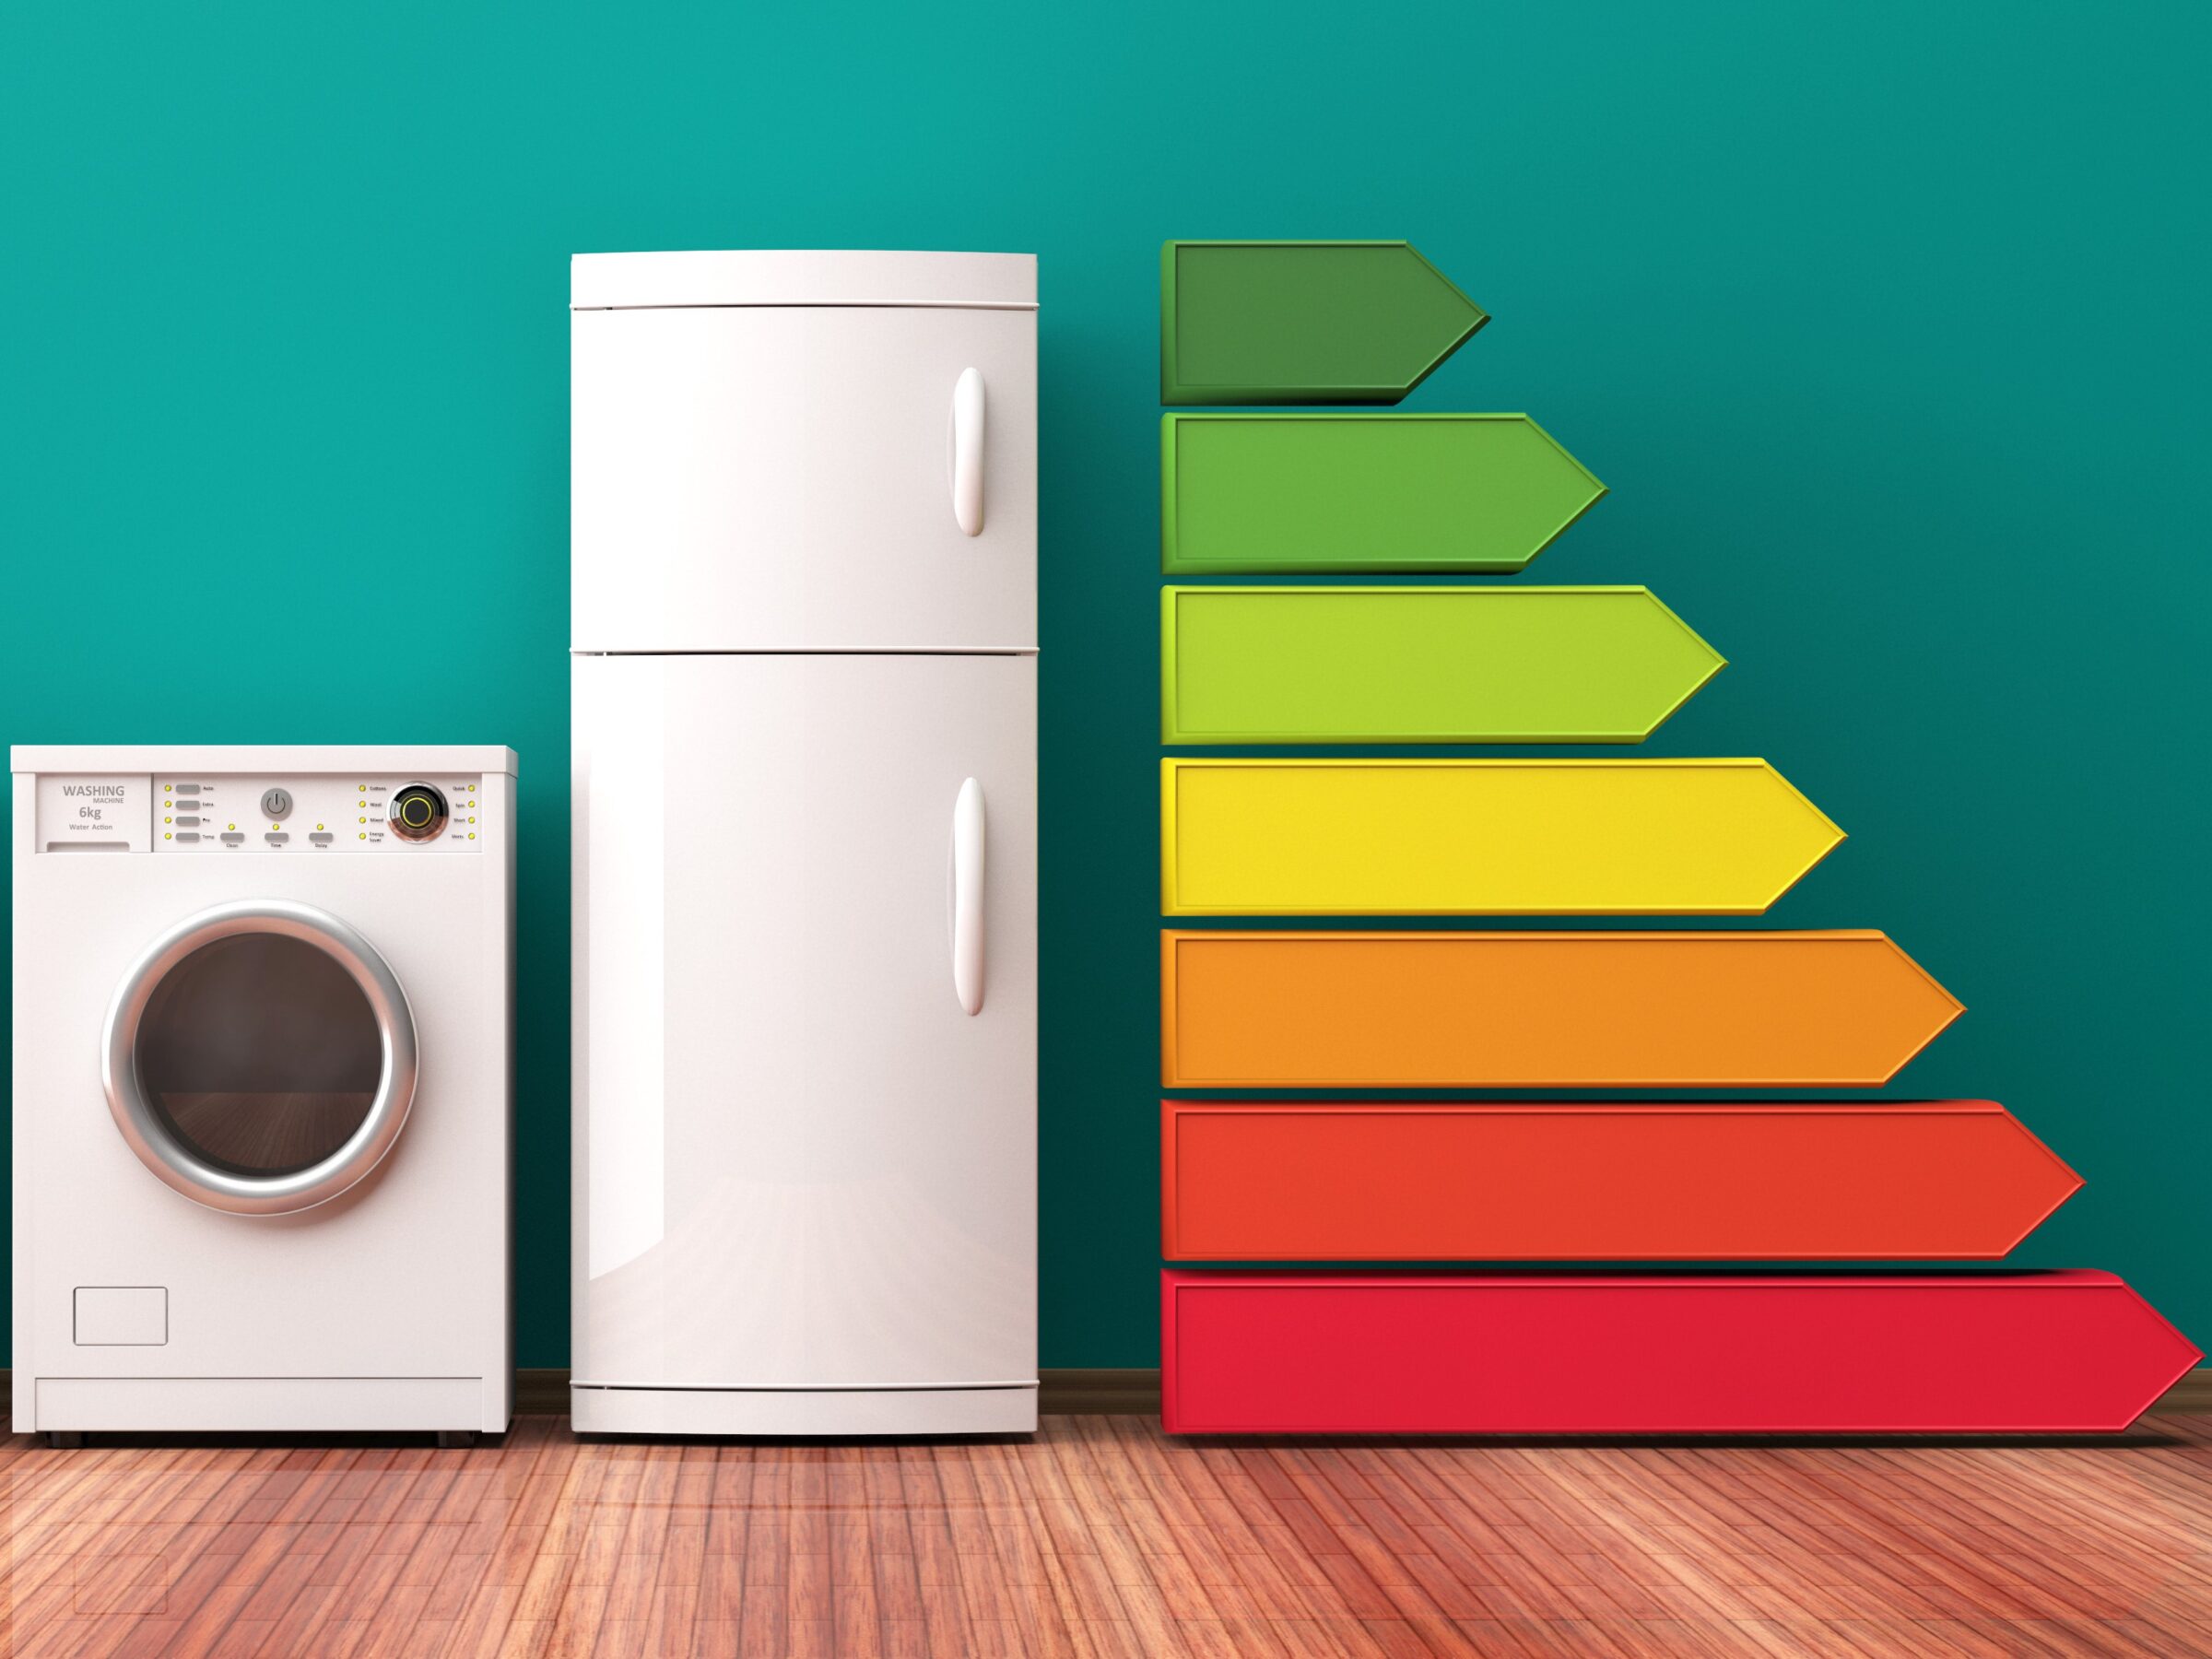 #Energielabel: Die wichtigsten Fragen und Antworten zu TVs, Waschmaschinen, Lampen und Co.